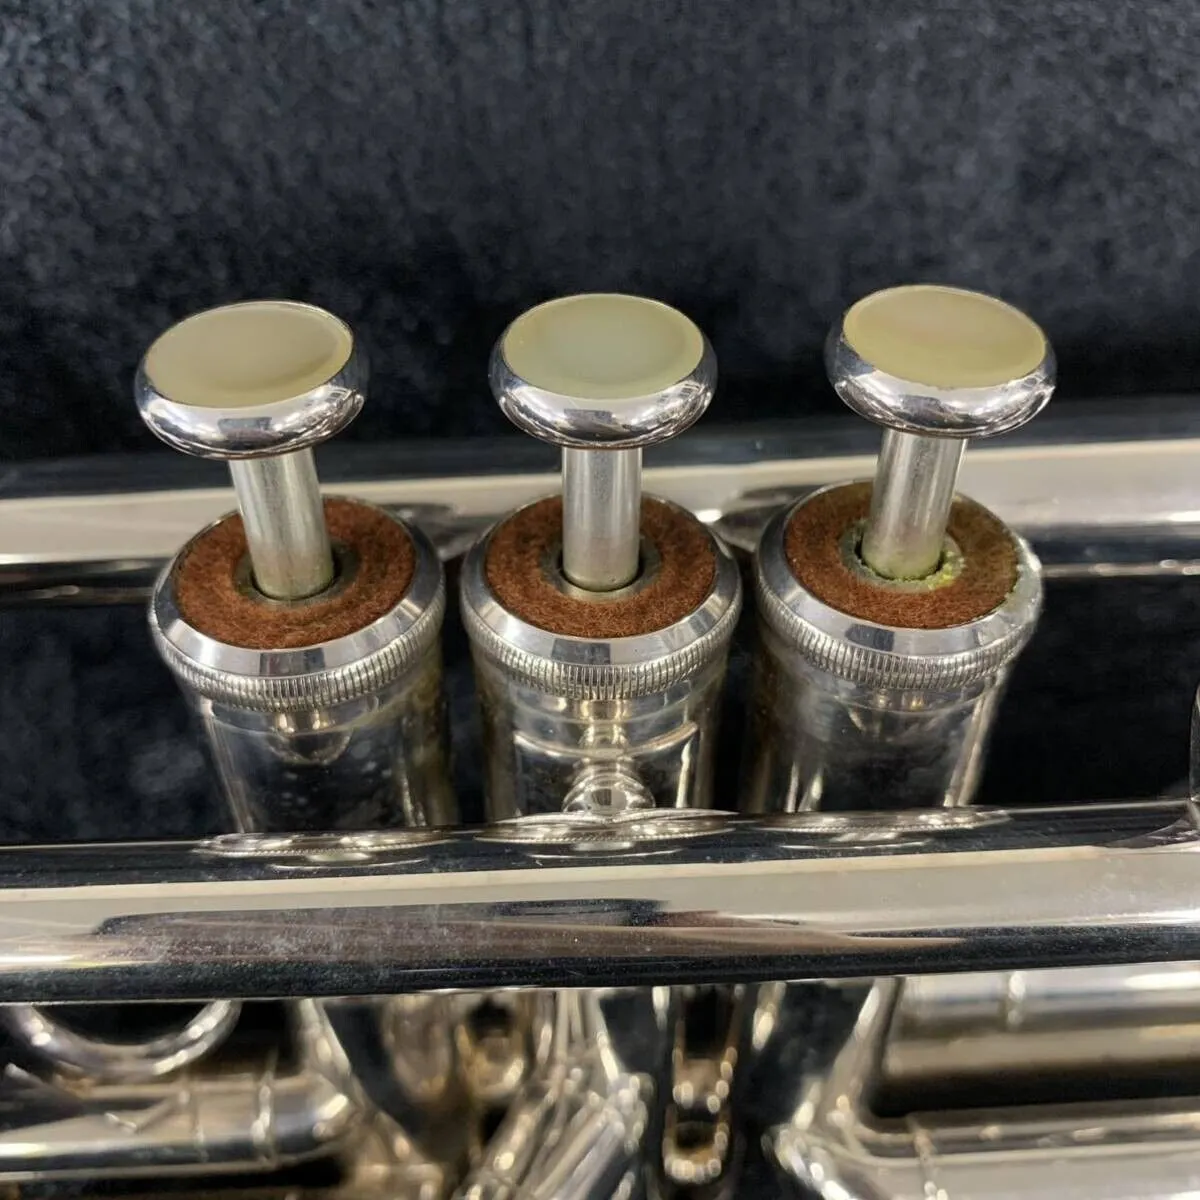 Ytr9335 kasalı trompet ağızlığı